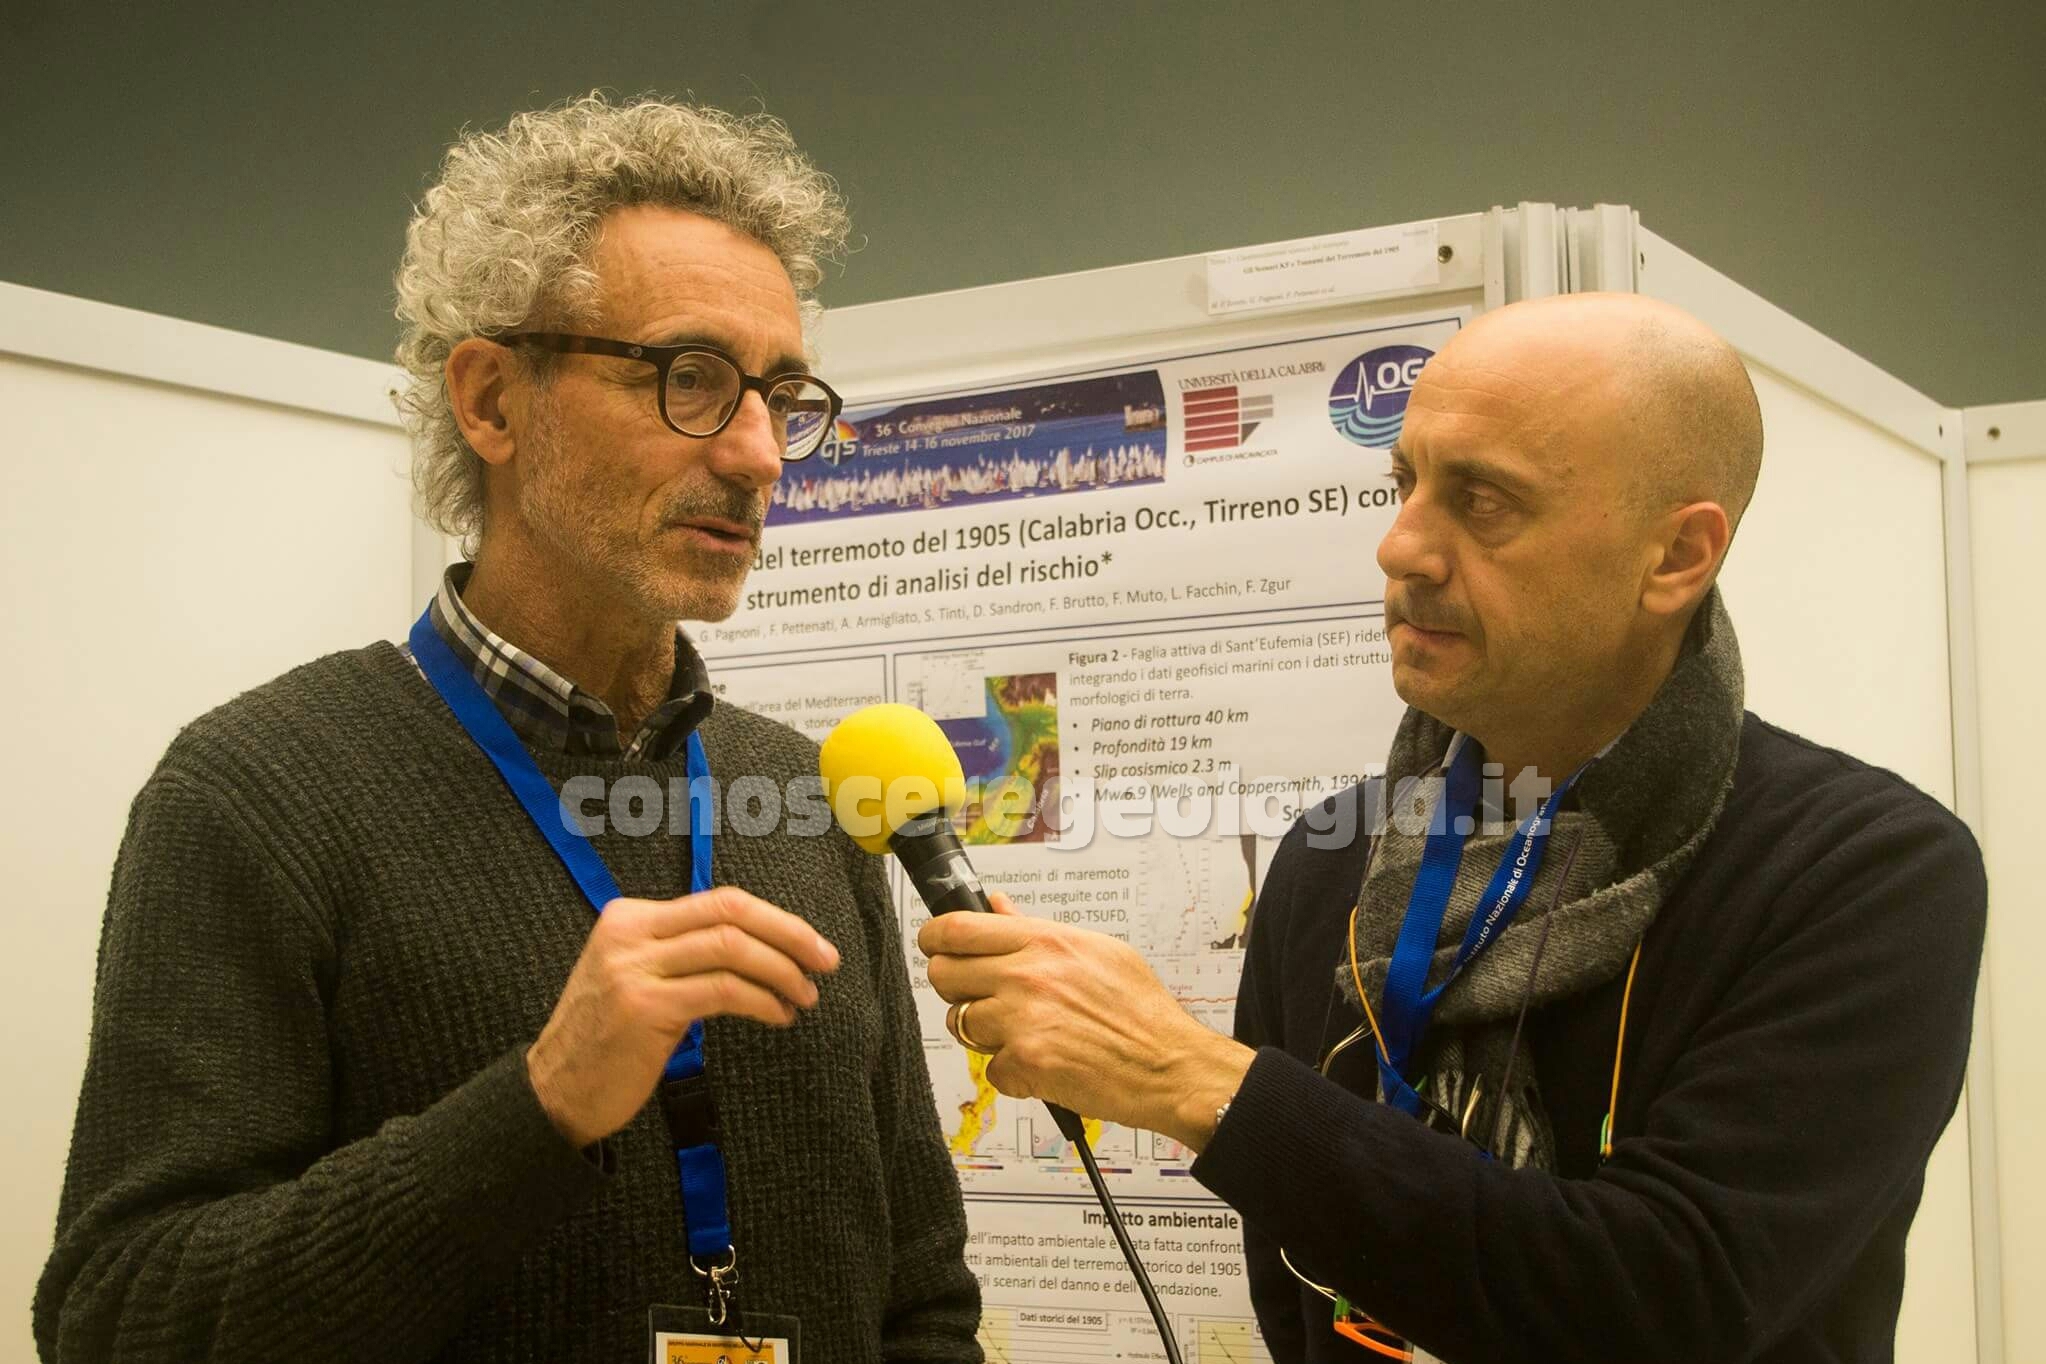 VIDEO CONOSCEREGEOLOGIA, Rischio tsunami e sismico in Italia, intervista al Dr. Amato